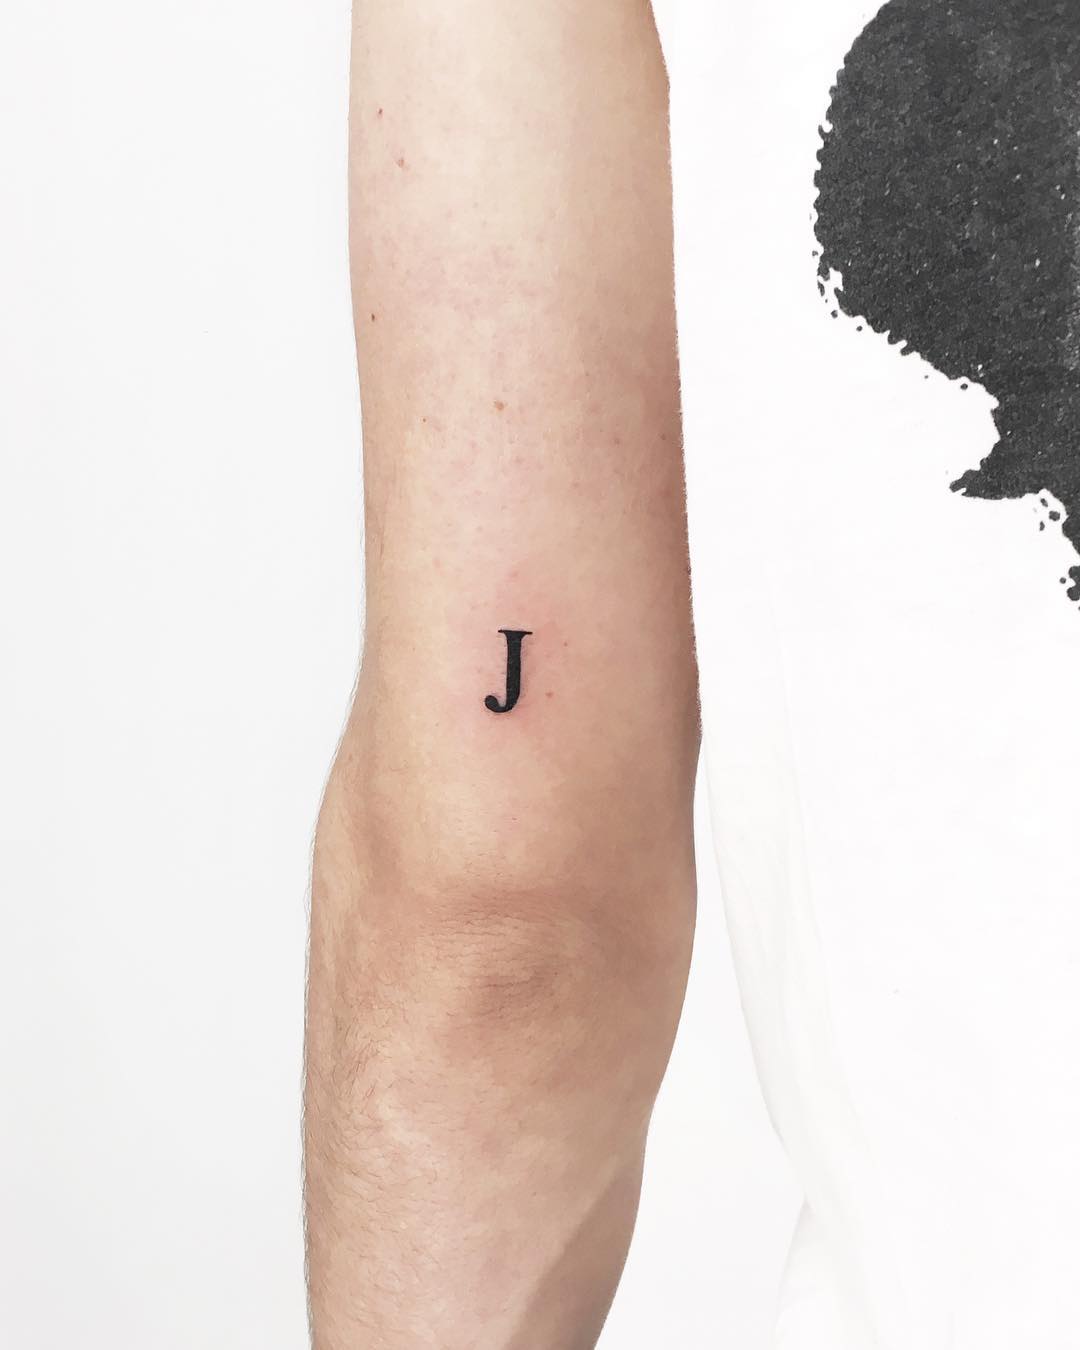 Tiny J tattoo by Gianina Caputo